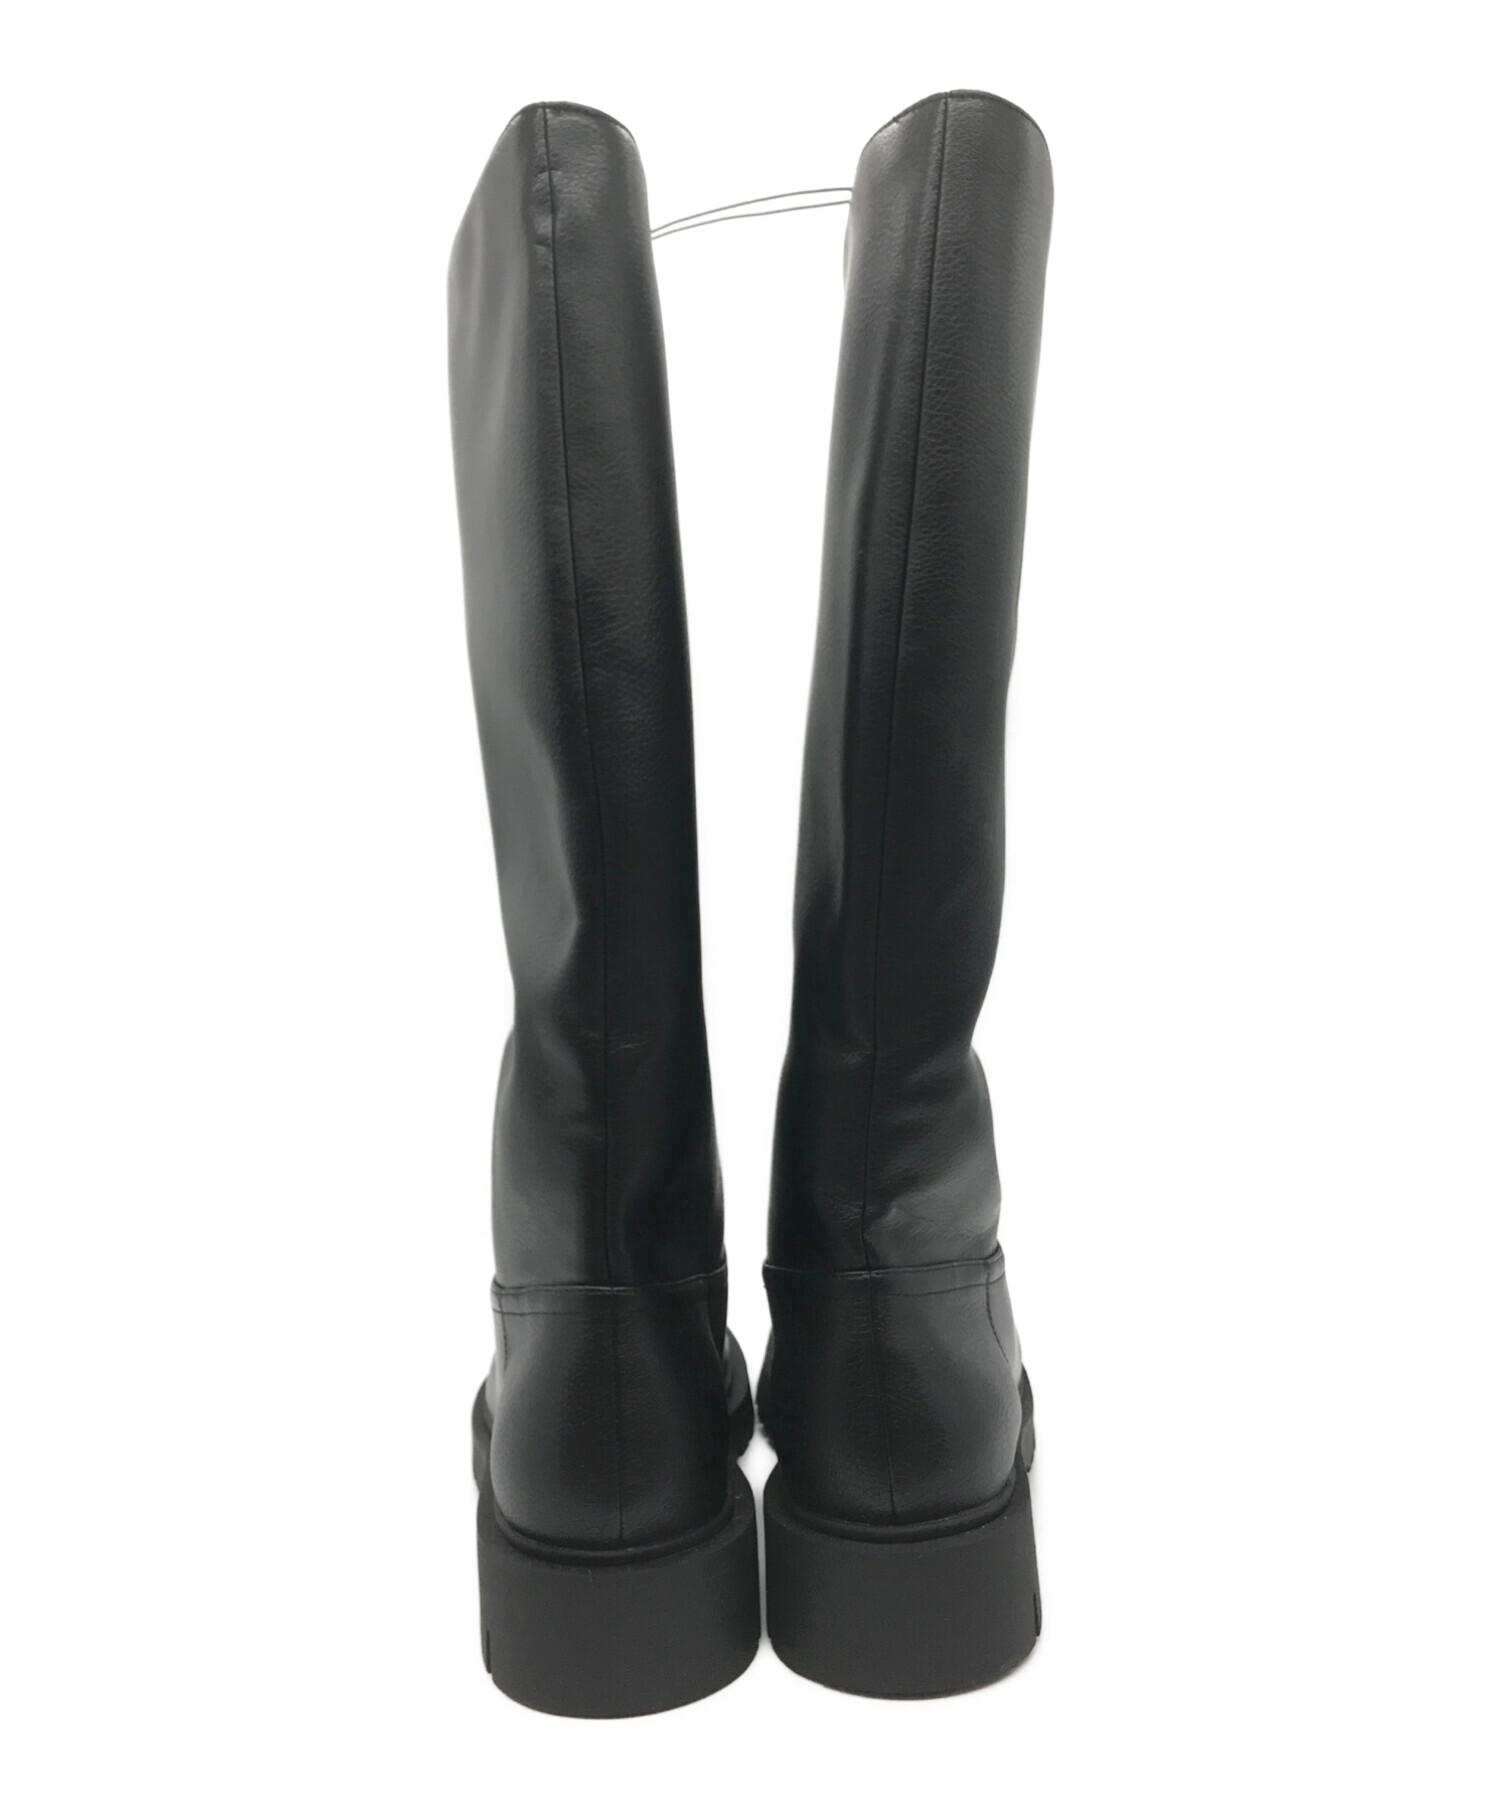 UNIQLO C (ユニクロシー) コンフィールタッチロングブーツ ブラック サイズ:25.0